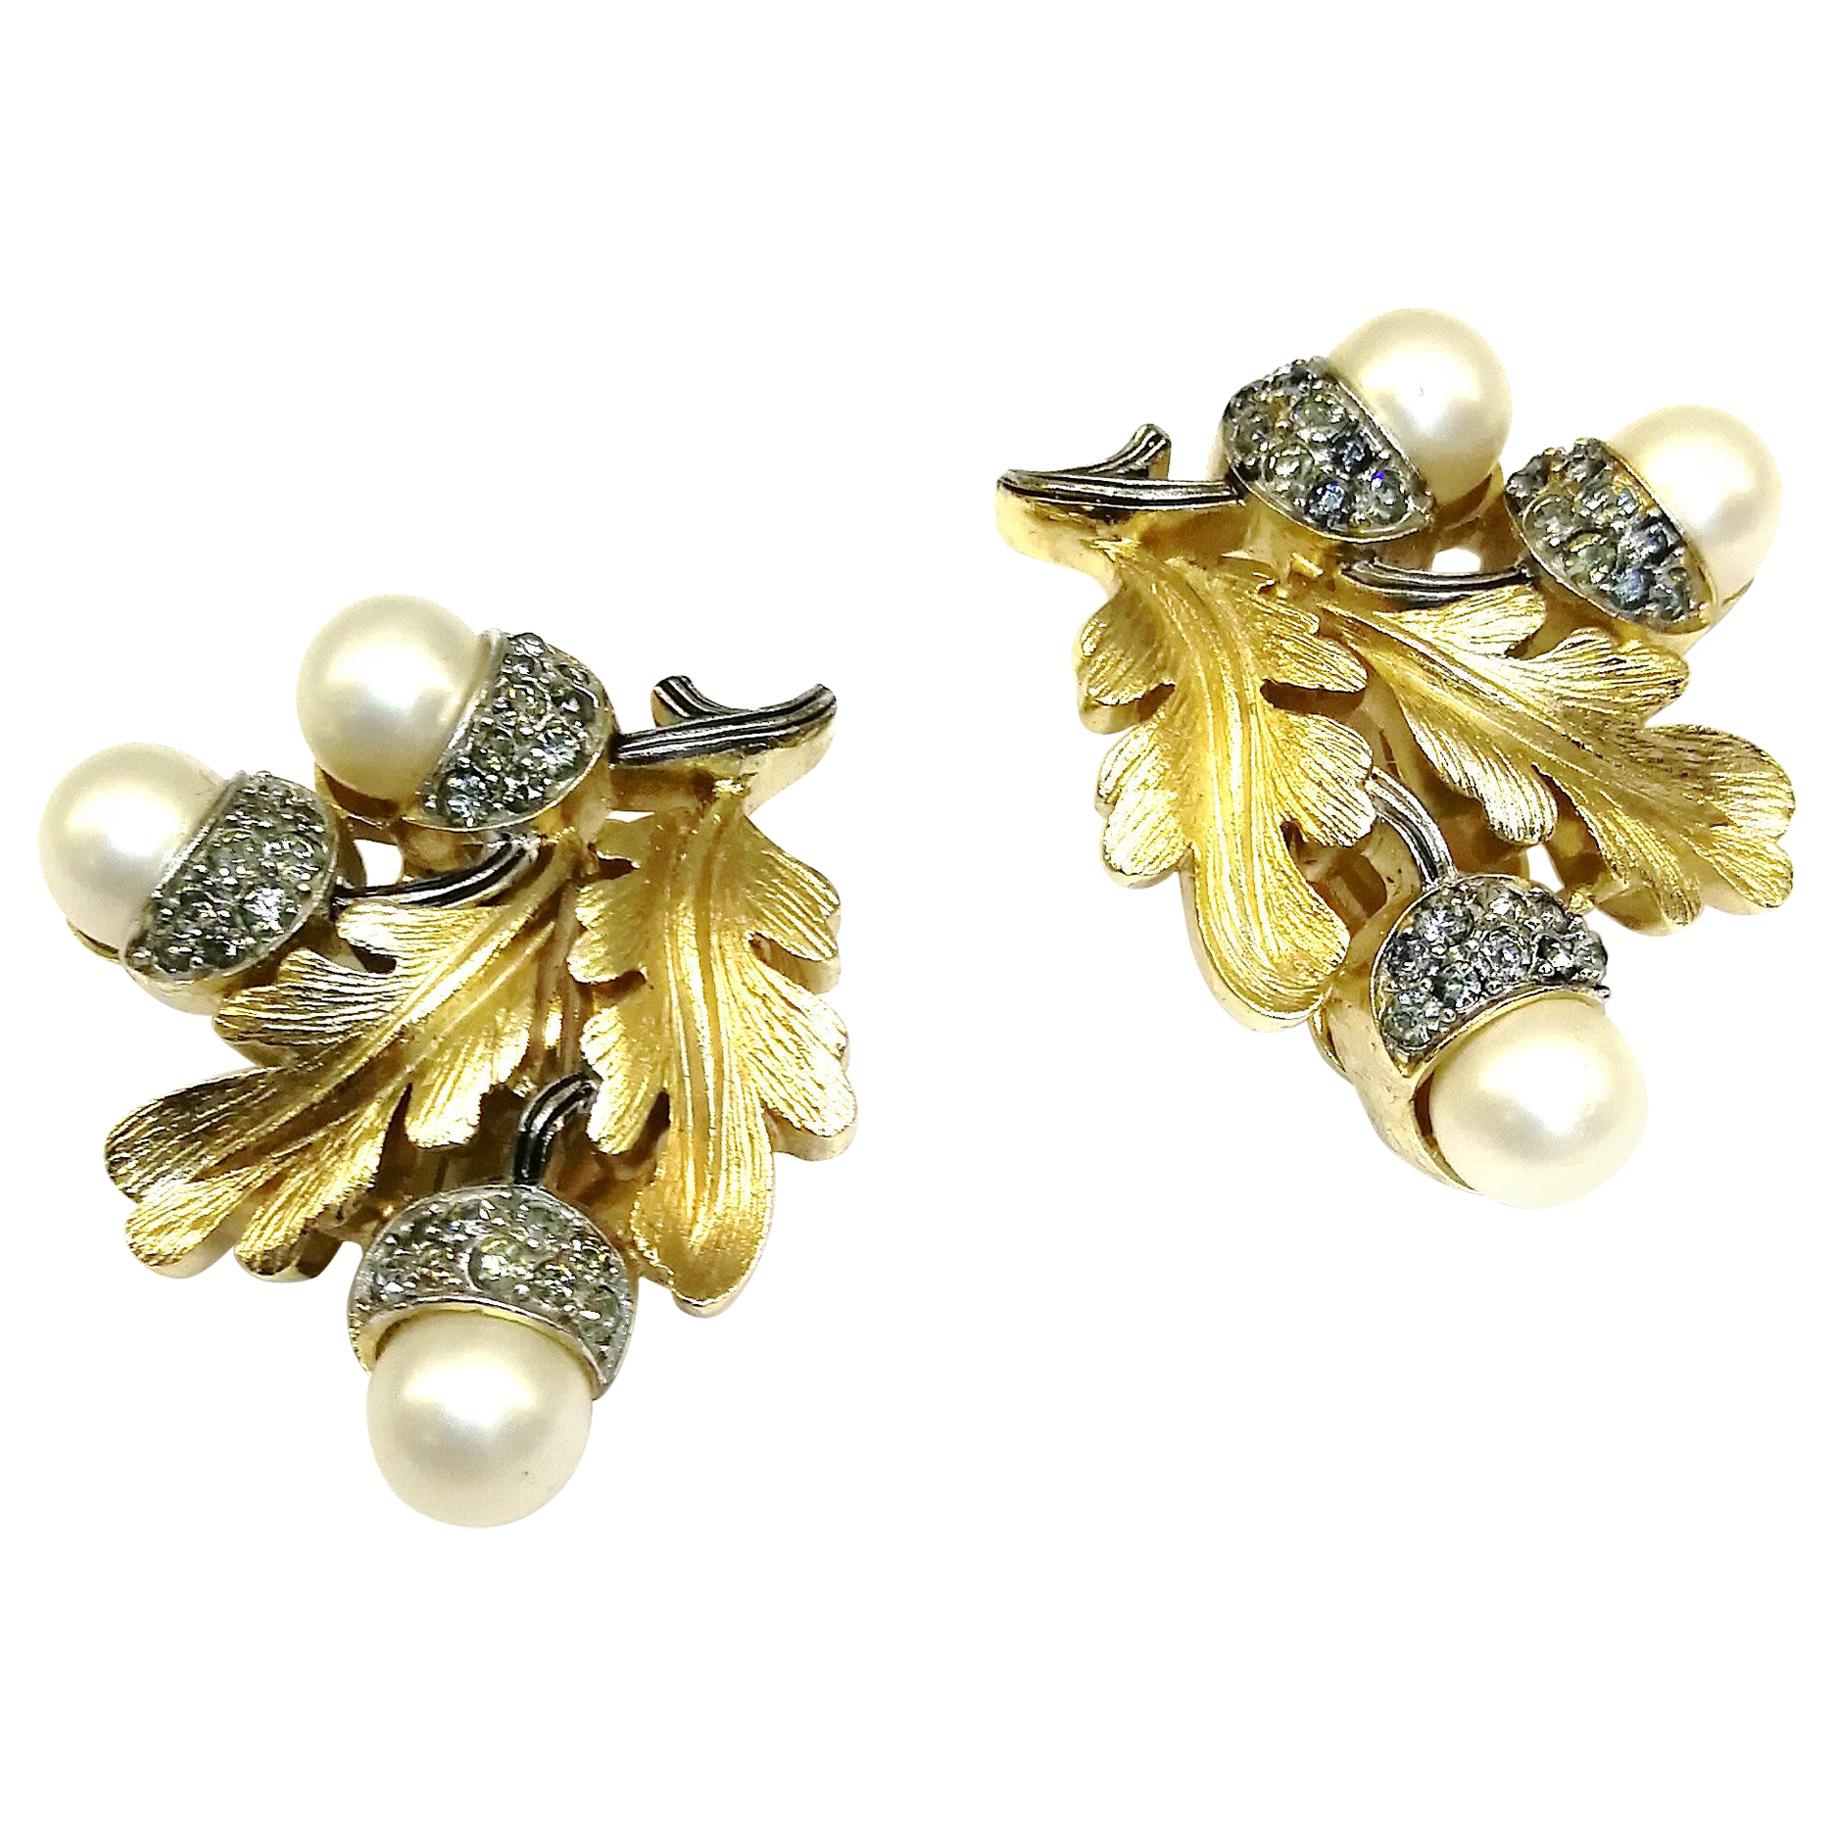 Grey paste and pearl 'acorn' earrings, Trifari, 1950s